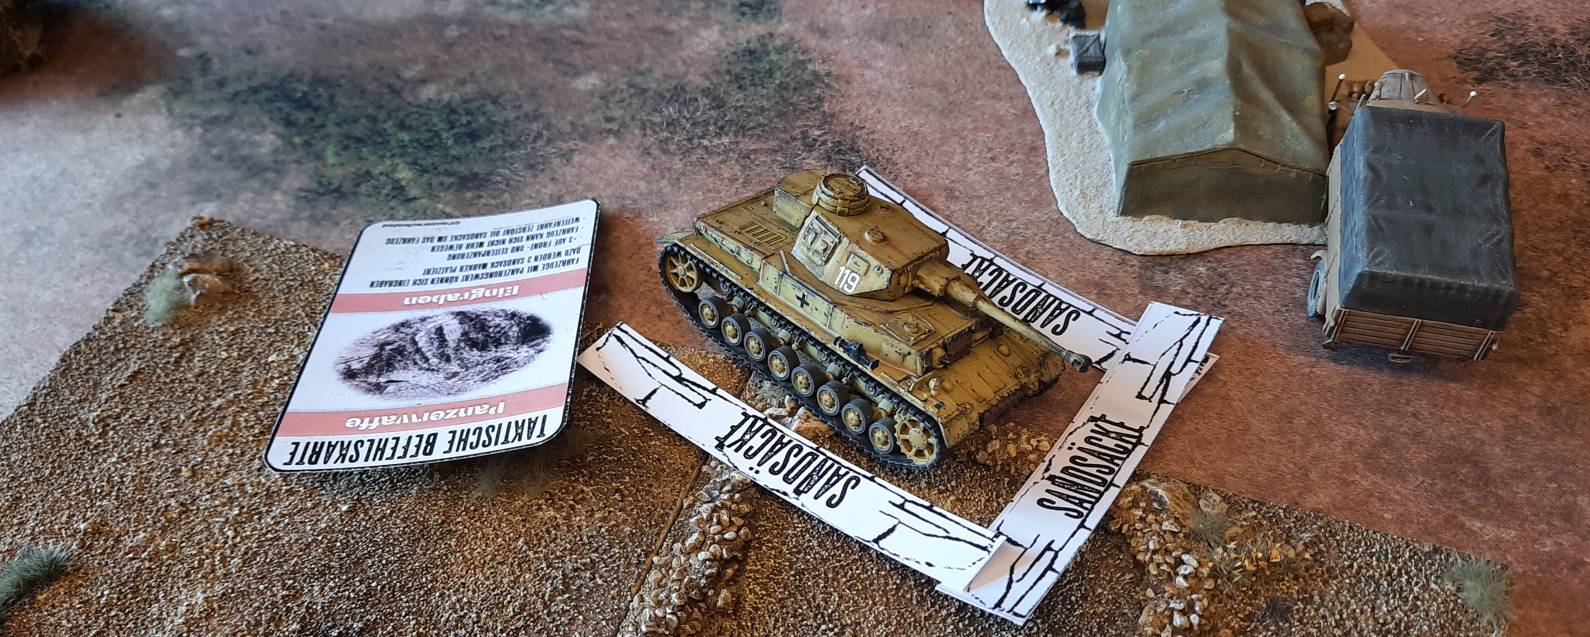 Die Befehlskarte "Eingraben" lässt den Panzer IV Ausf. G zu einer latenten Bedrohung für die Briten werden. Schwer auszuschalten, doch auf 60cm hochwirksam gegen alle Briten-Panzer